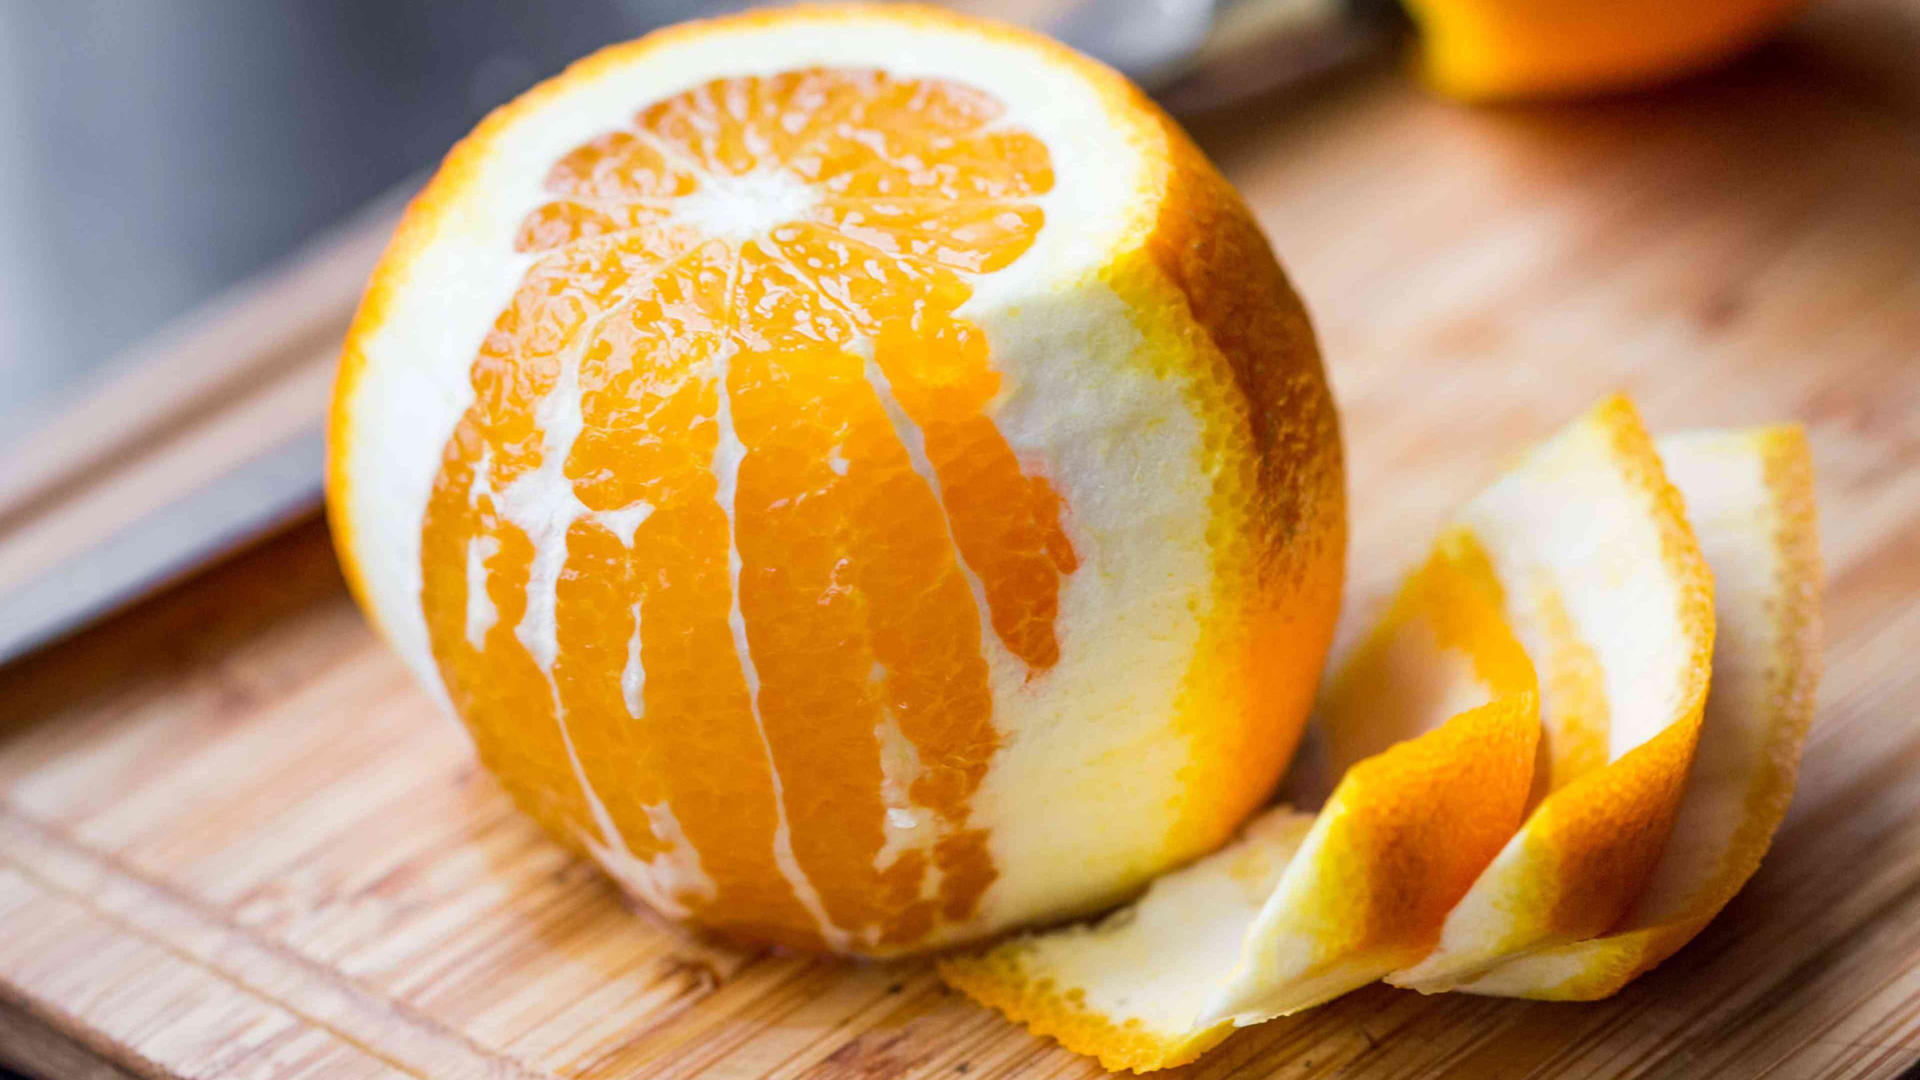 An orange with orange peel